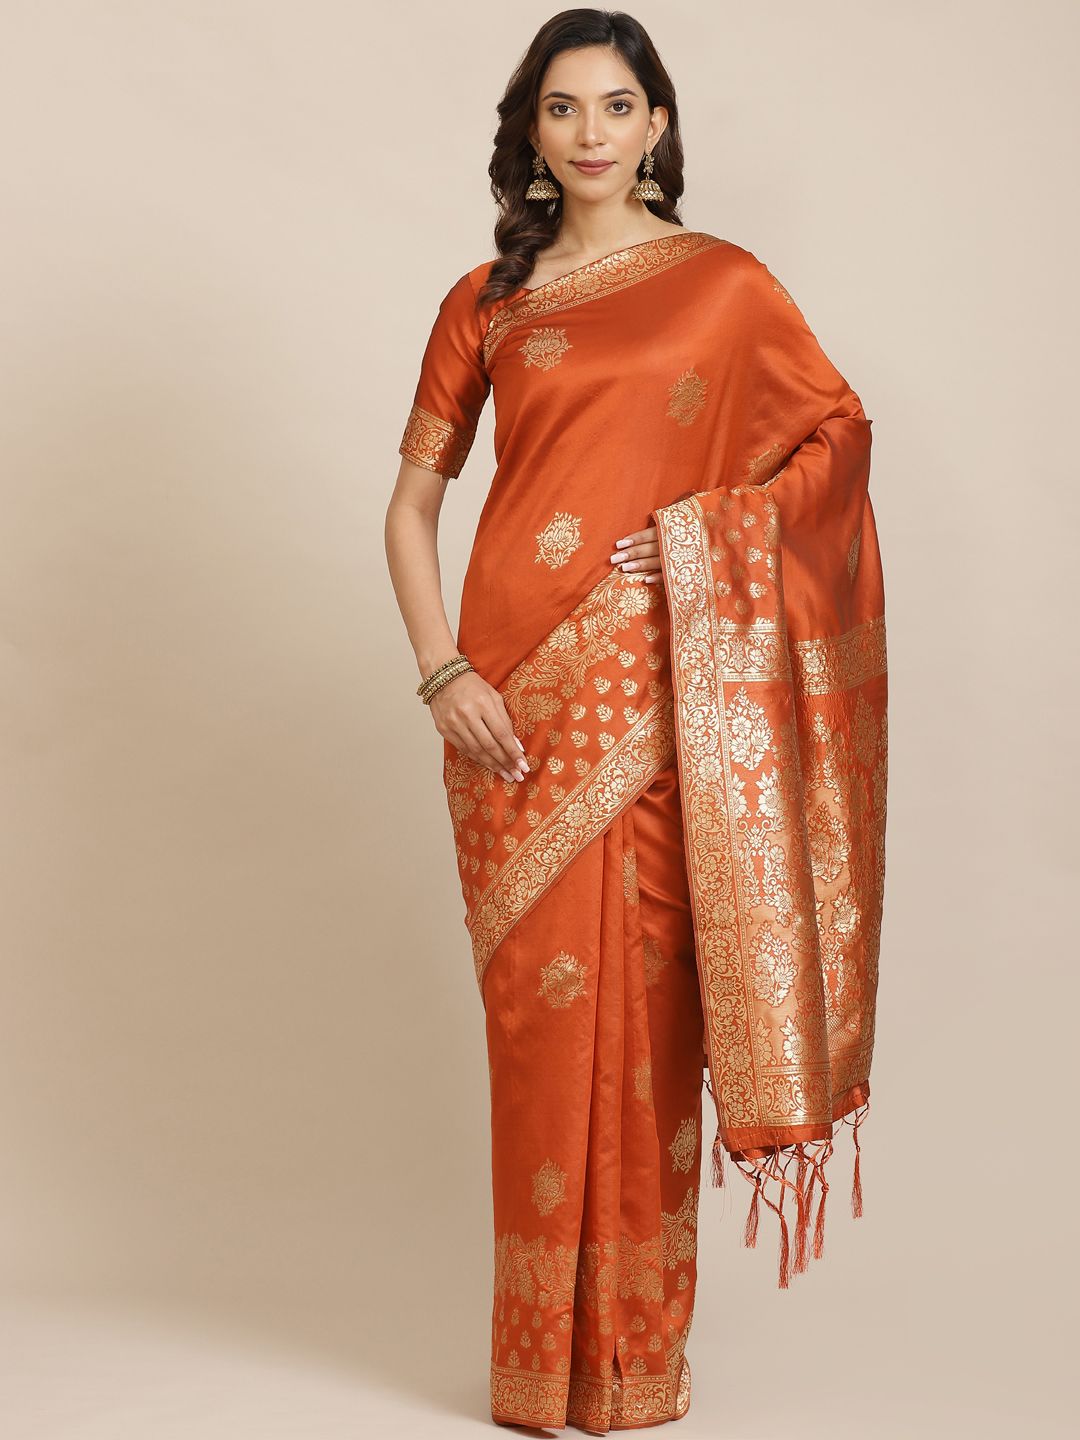 Saree mall Rust Orange & Golden Woven Design Banarasi Saree Price ...